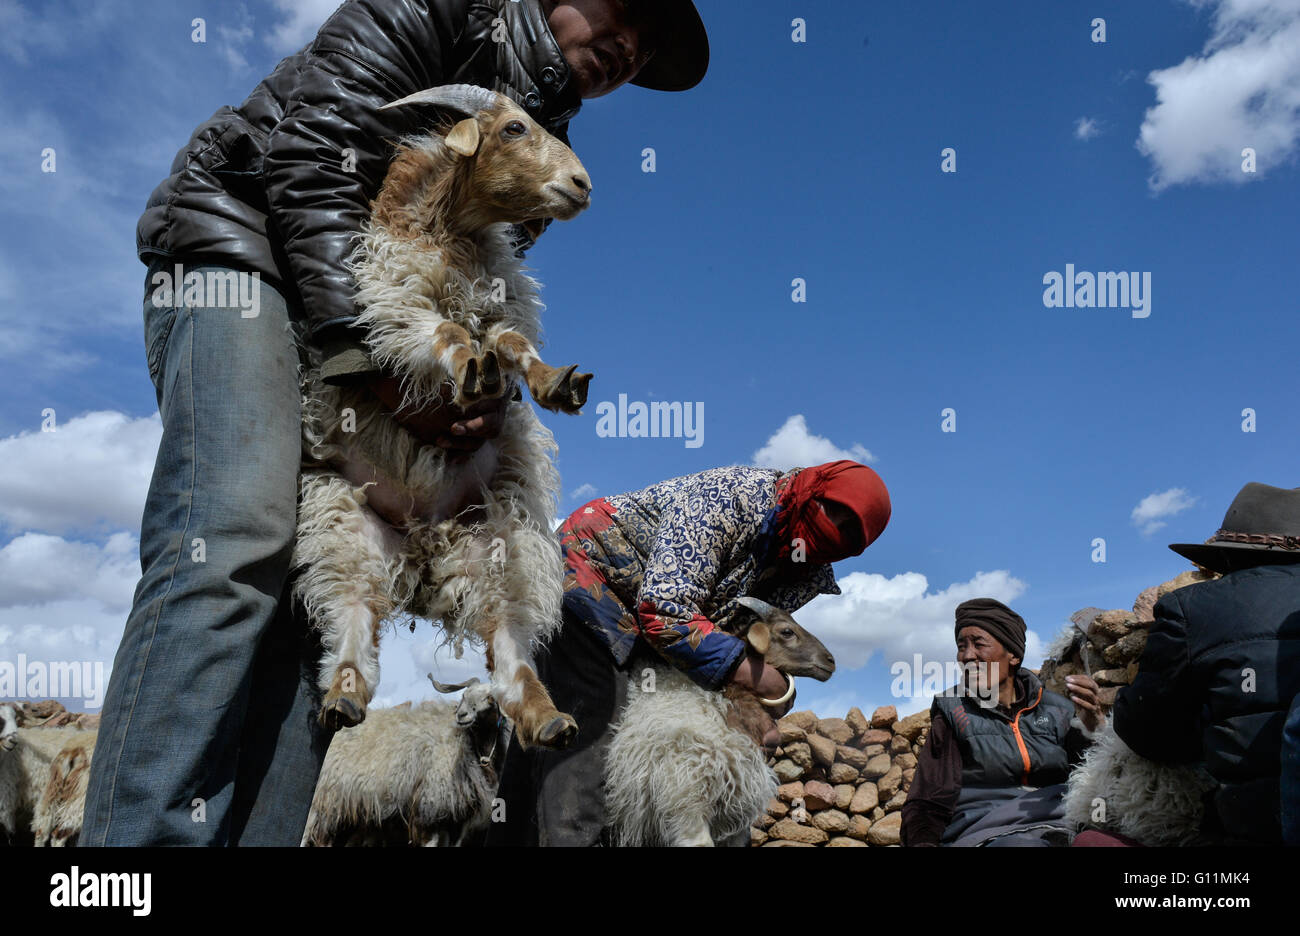 Lhasa, la Cina della regione autonoma del Tibet. Il 5 maggio, 2016. Mandriani preparare castrati ovini maschi sul lungofiume del Nam Co, a sud-ovest della Cina di regione autonoma del Tibet, 5 maggio 2016. Una pecora castrazione cermeony, che è stato osservato per più di mille anni dai mandriani che vivono nella parte settentrionale della regione del Tibet, si è tenuta sul lungofiume del Nam Co. Al fine di pecore di razza di migliore qualità, nonostante qualche robusto ovini maschi, la maggior parte degli ovini maschi di più di 5 mesi di età saranno qui e castrati allevati come carni di montone pecore. © Purbu Zhaxi/Xinhua/Alamy Live News Foto Stock